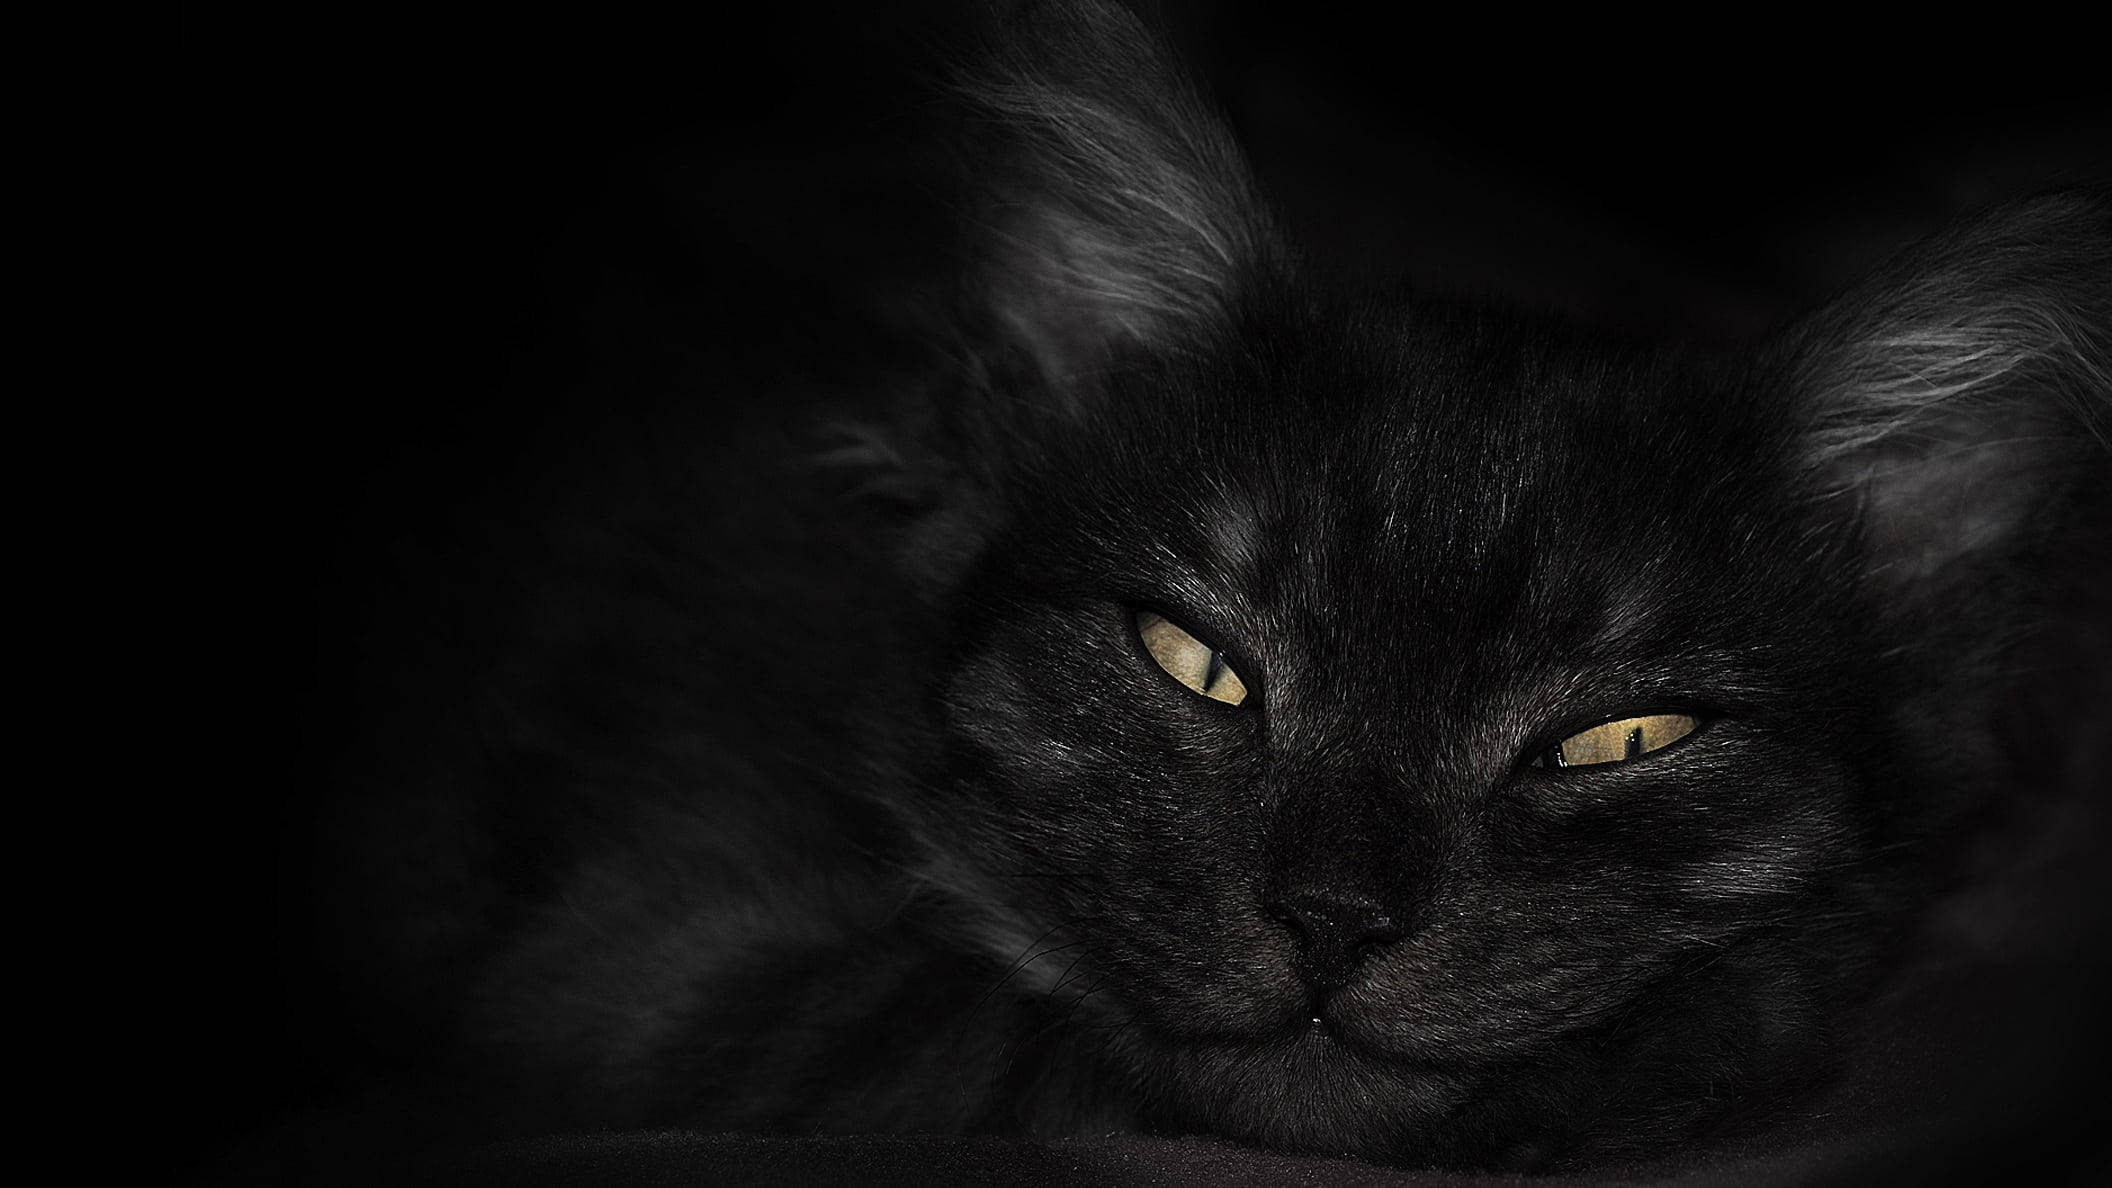 Hãy để chiếc laptop của bạn trở nên thú vị hơn với bức hình nền đầy thi vị của mèo đen. Với khuôn mặt và ánh mắt đầy ngộ nghĩnh, chú mèo đáng yêu này sẽ làm nổi bật màn hình của bạn và mang đến cho bạn sự thư giãn sau những giờ làm việc căng thẳng.